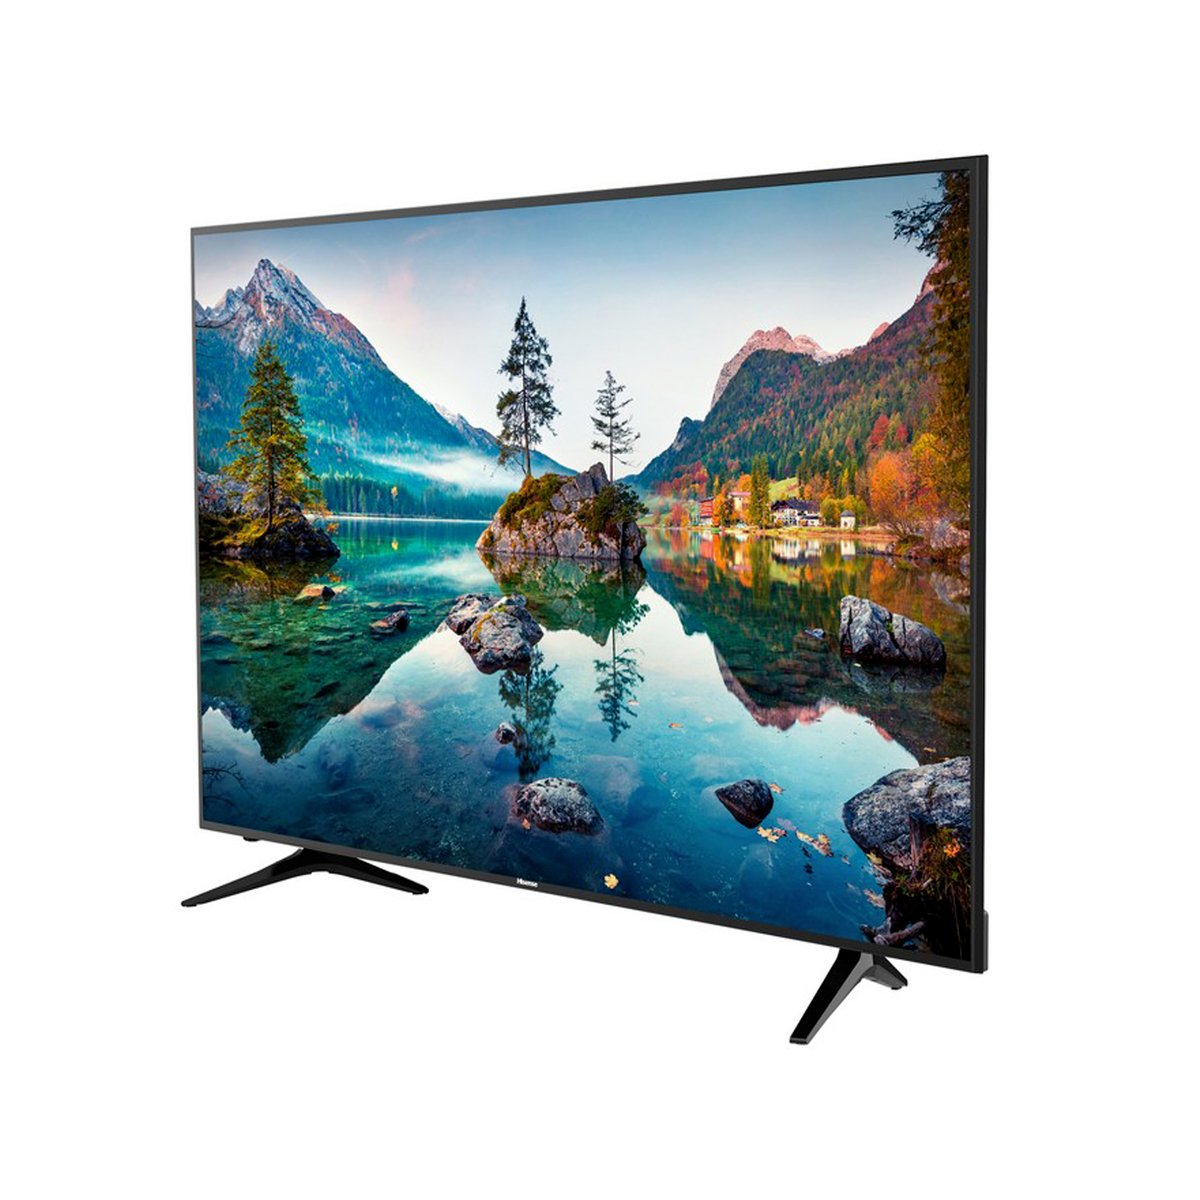 Hisense Ultra HD Smart LED TV 50A6100UW 50inch